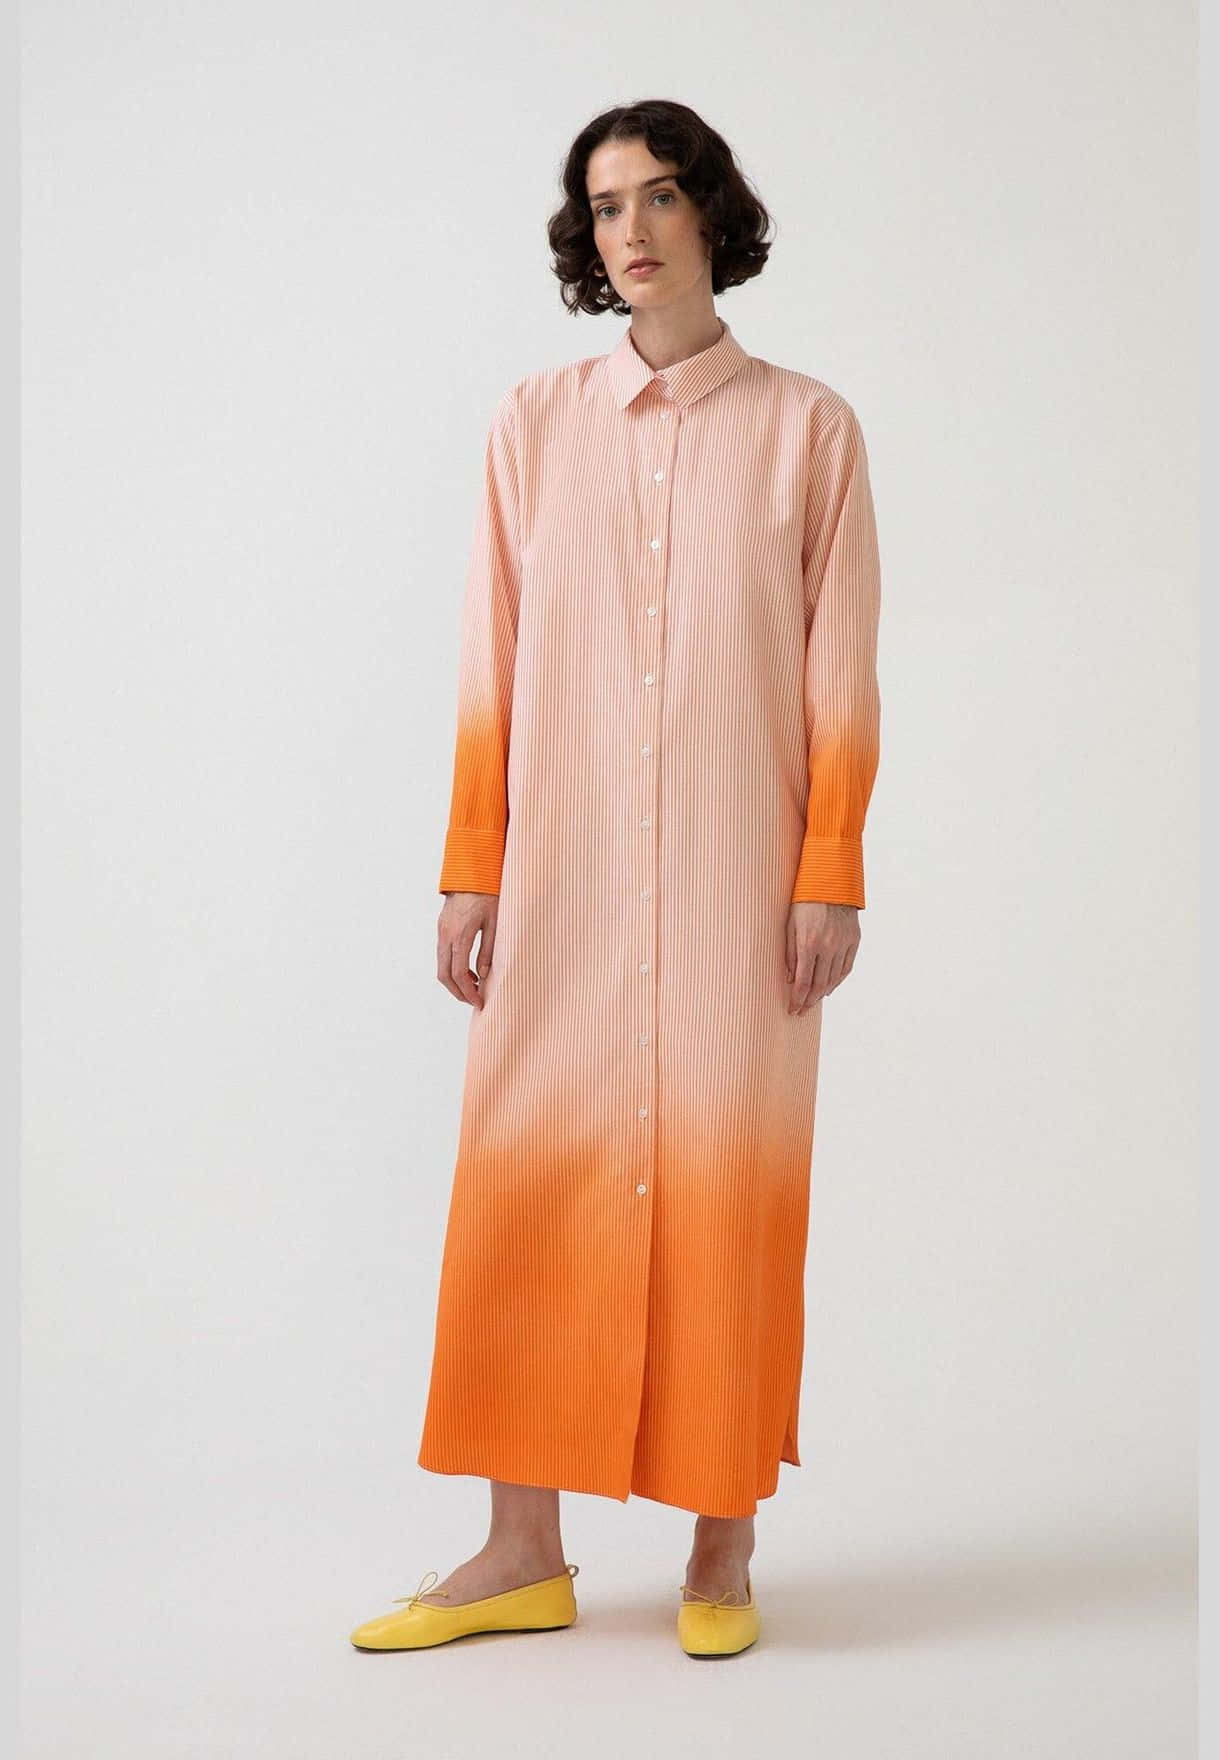 Enkvinna Iförd En Skjortklänning I Orange Och Gult.